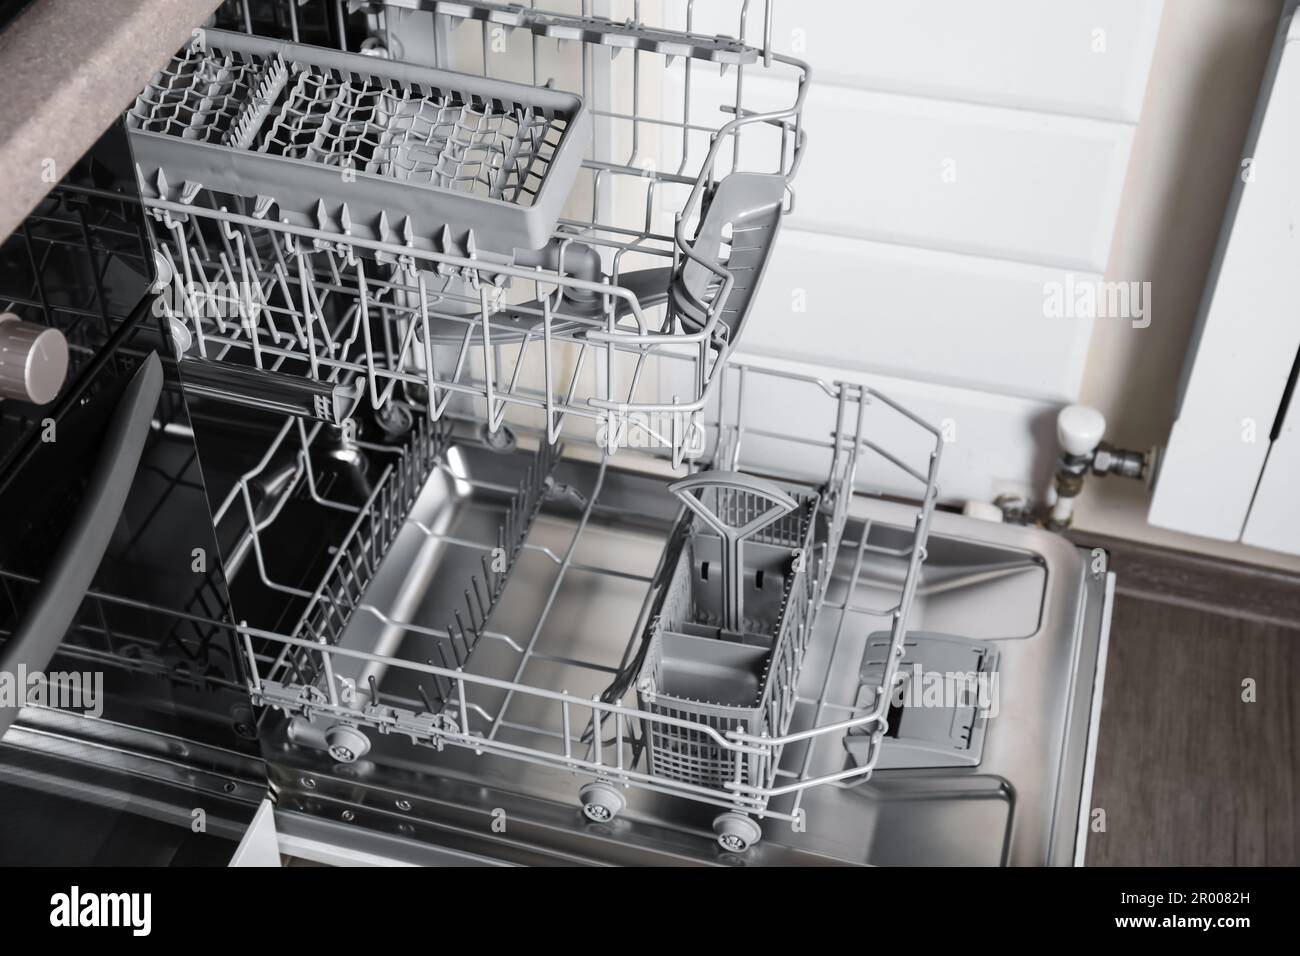 Ouvrir propre lave-vaisselle vide dans la cuisine, fermer Photo Stock -  Alamy